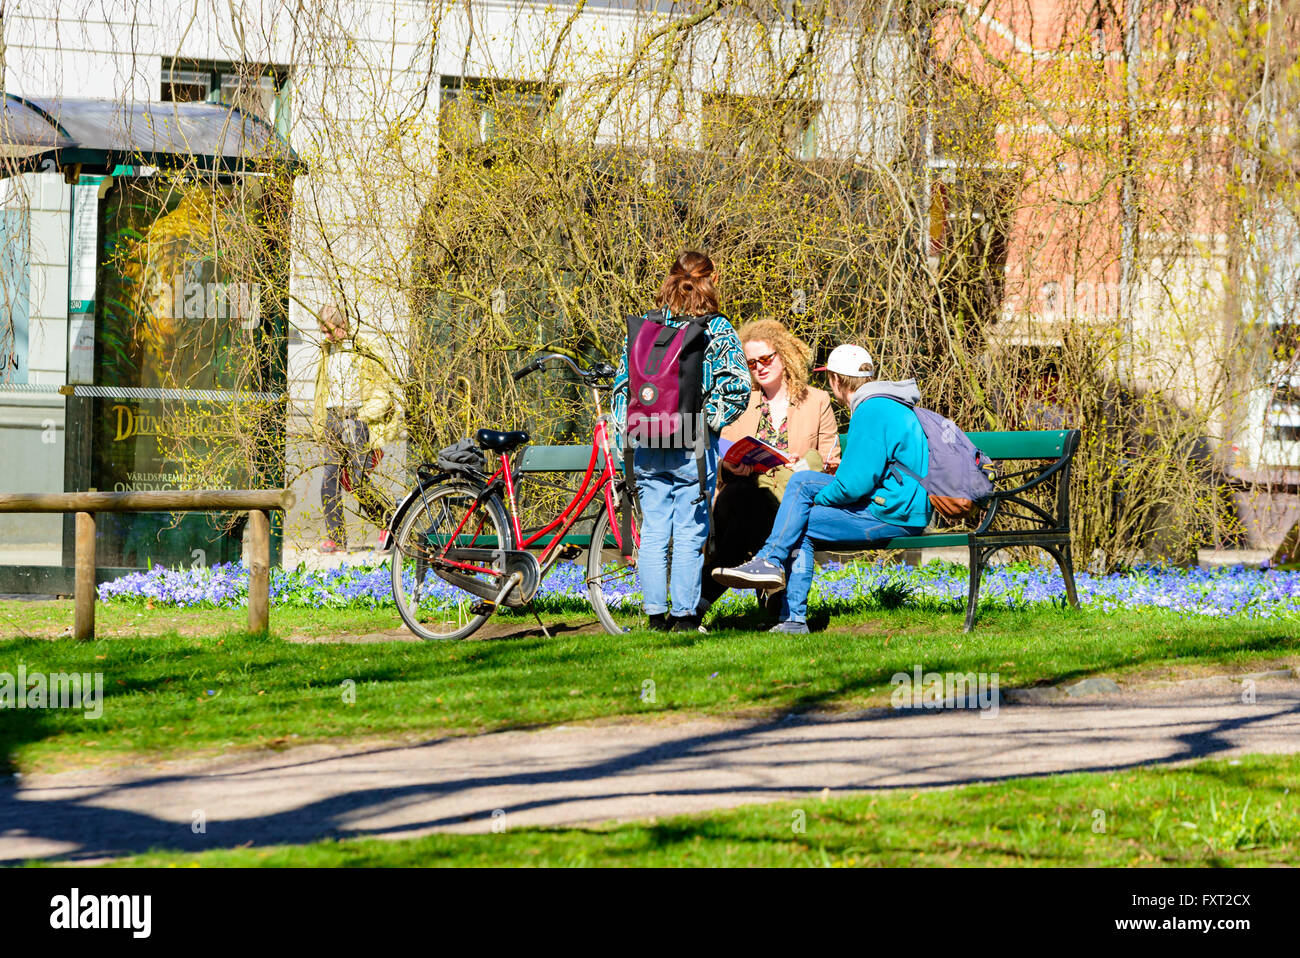 Lund, Svezia - 11 Aprile 2016: La vita quotidiana della città. I giovani parlare e discutere su un banco di lavoro in uno dei parchi della città. Foto Stock